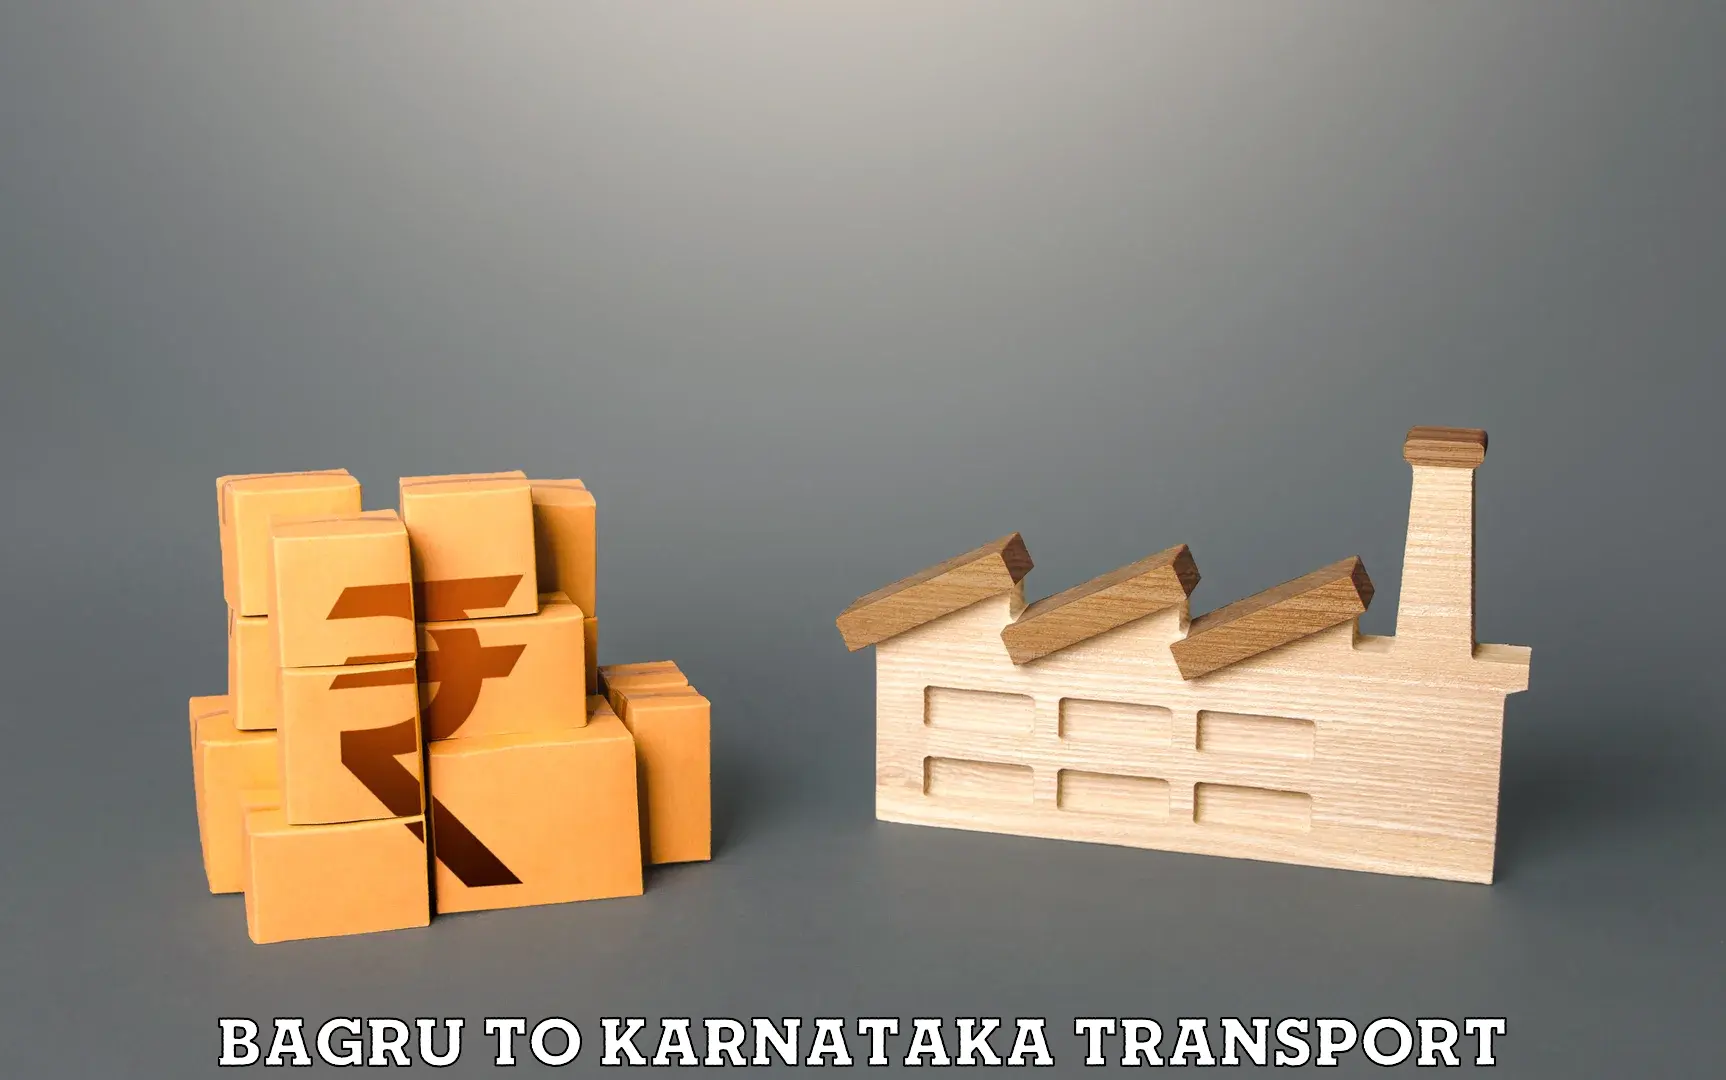 Two wheeler transport services Bagru to Karnataka